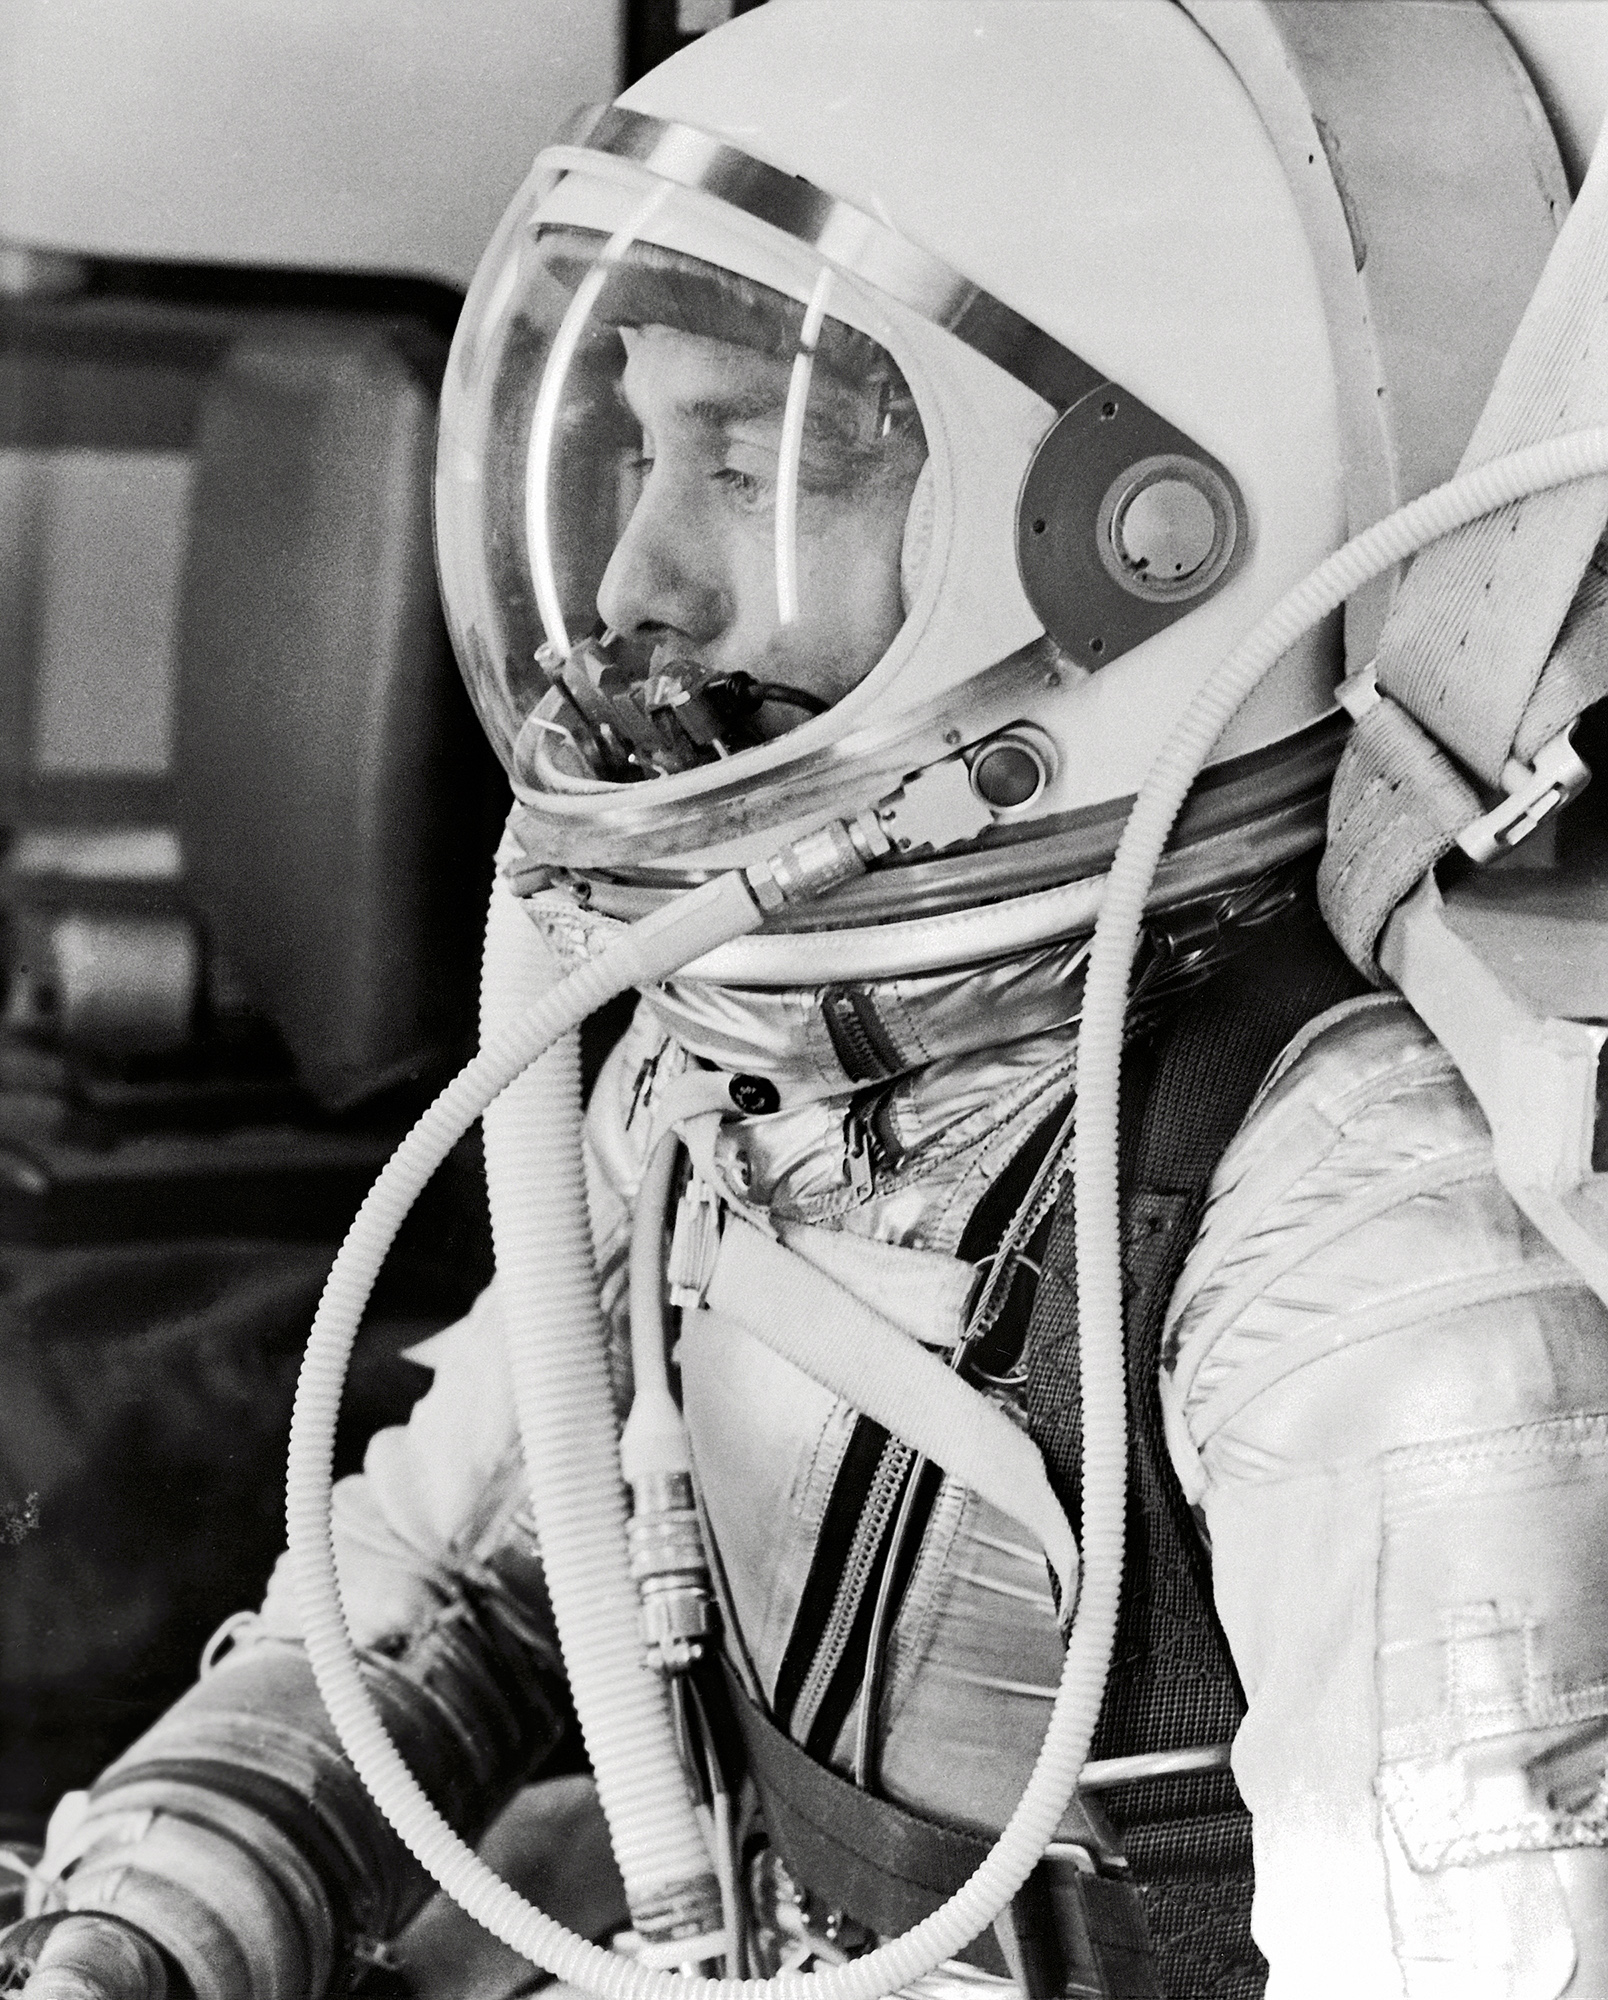 astronaut-alan-shepard-in-his-silver-pressure-suit.jpg